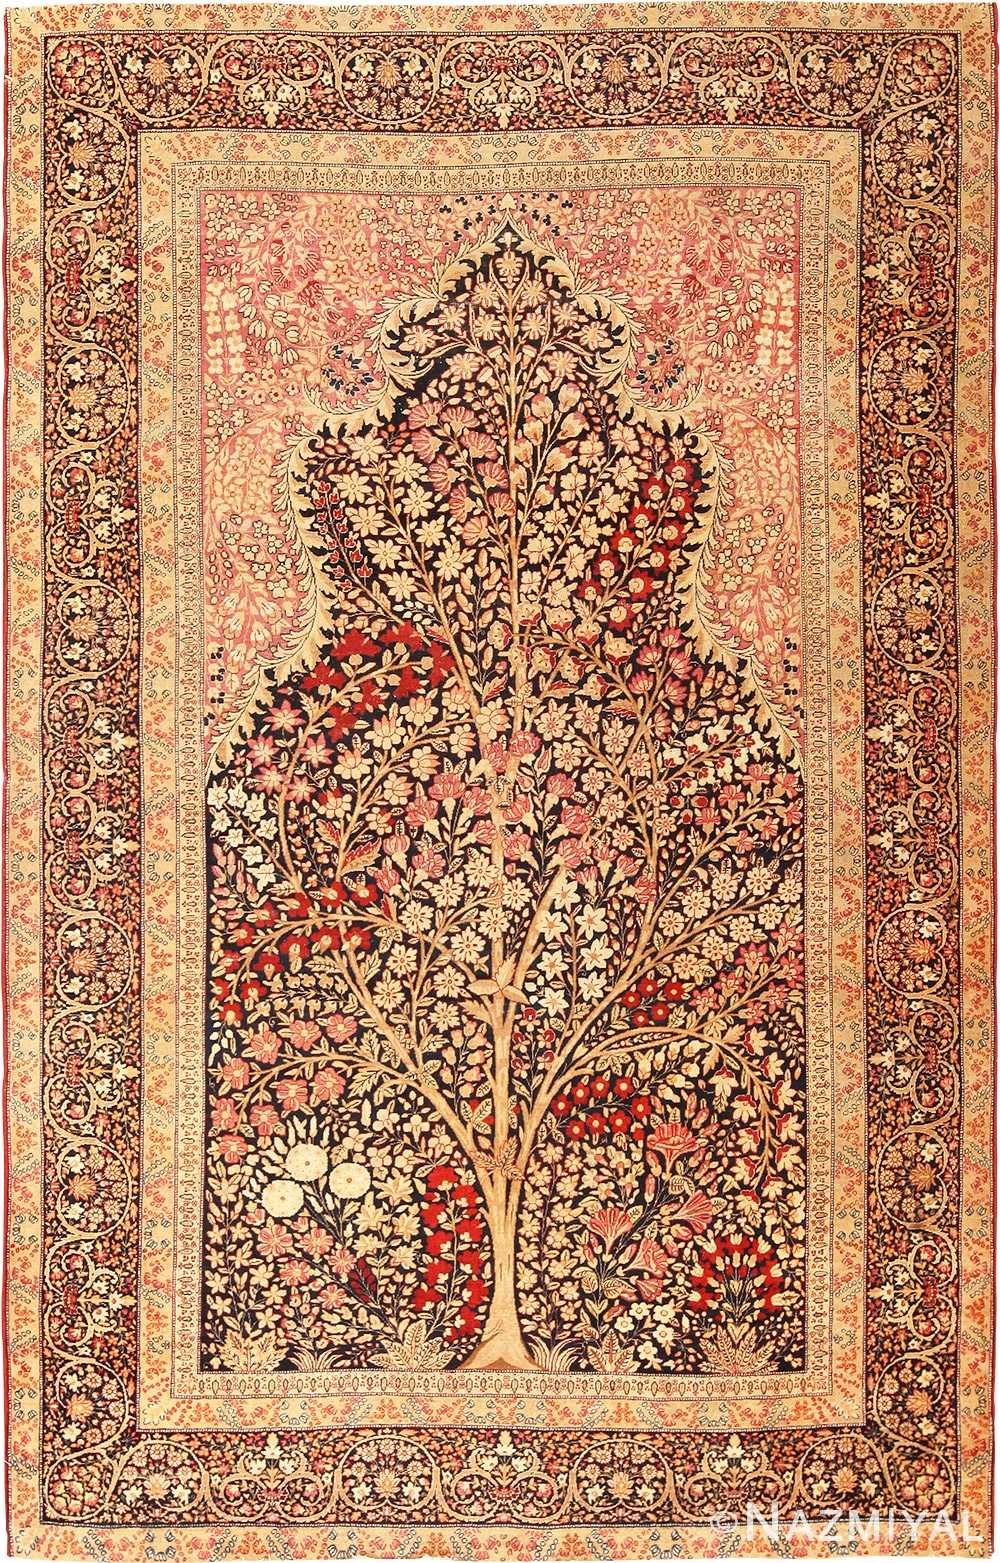 Tree of Life Design Persian Kerman Rug 49168 by Nazmiyal